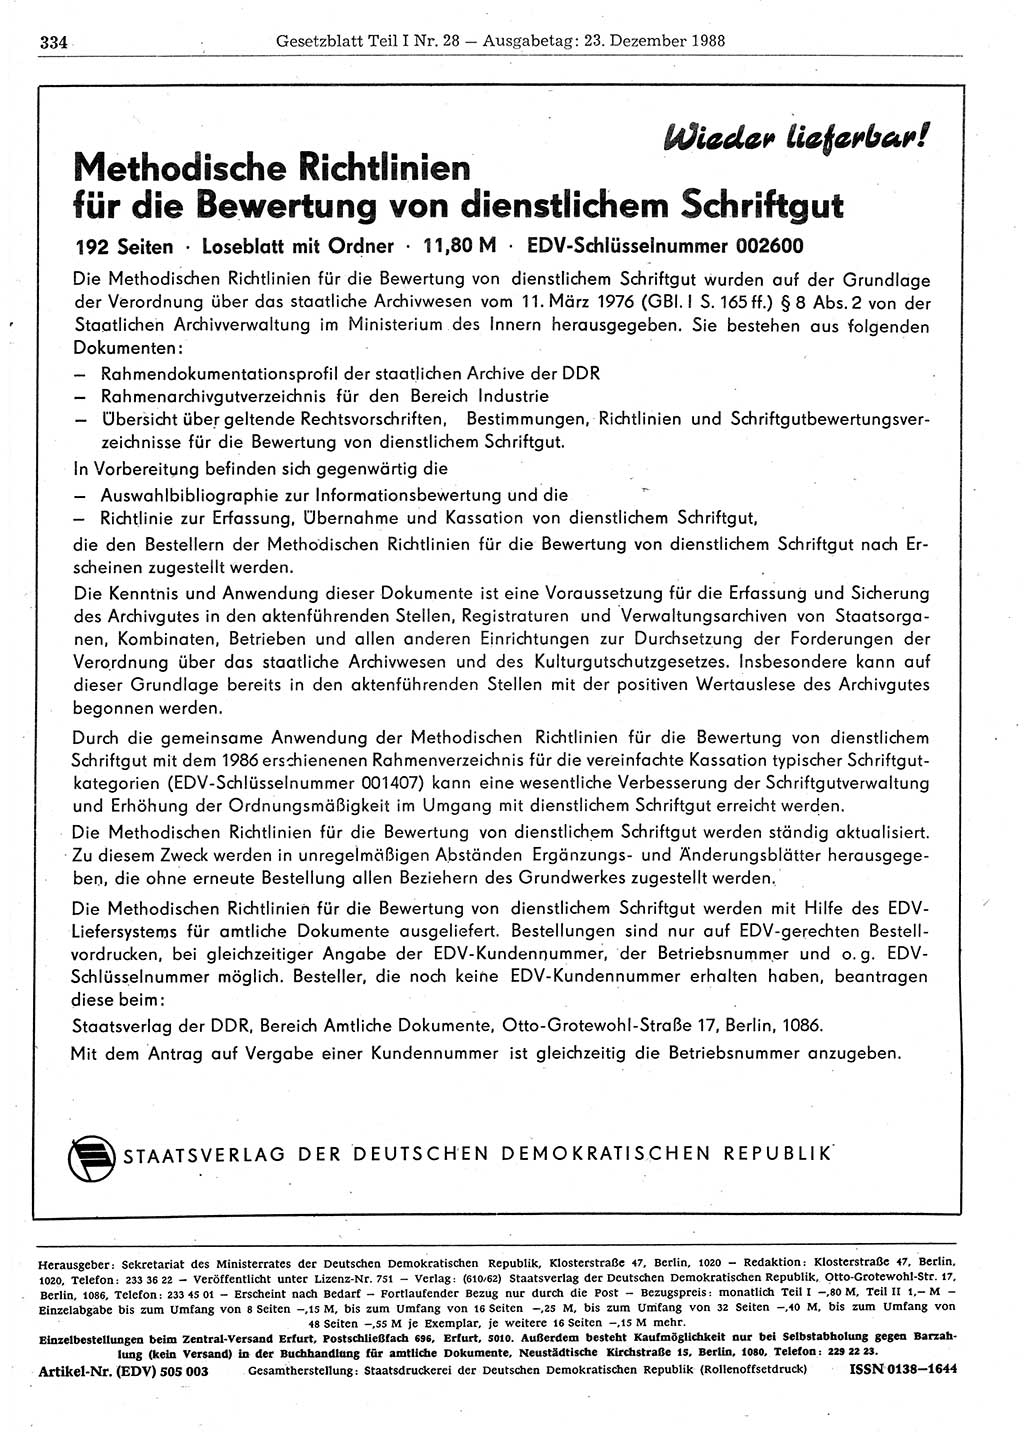 Gesetzblatt (GBl.) der Deutschen Demokratischen Republik (DDR) Teil Ⅰ 1988, Seite 334 (GBl. DDR Ⅰ 1988, S. 334)